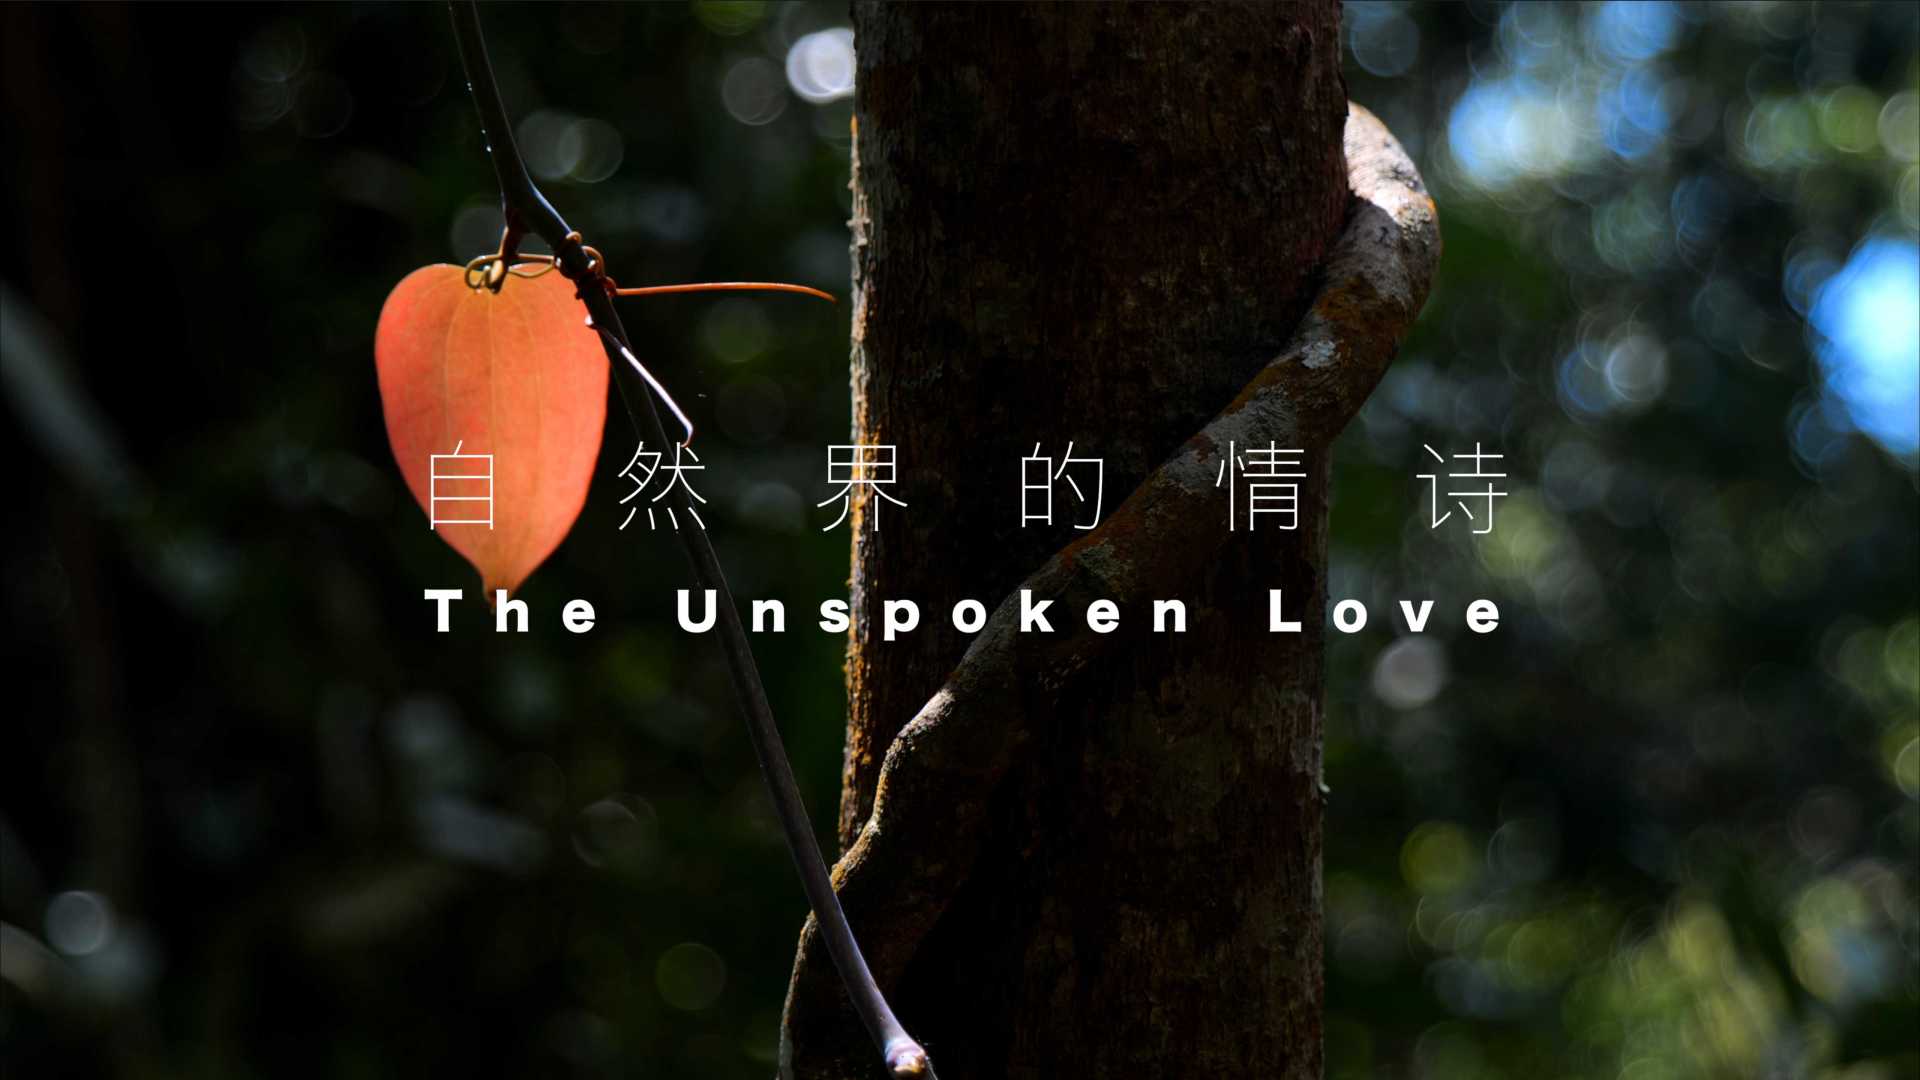 自然界的情诗 The Unsopken Love